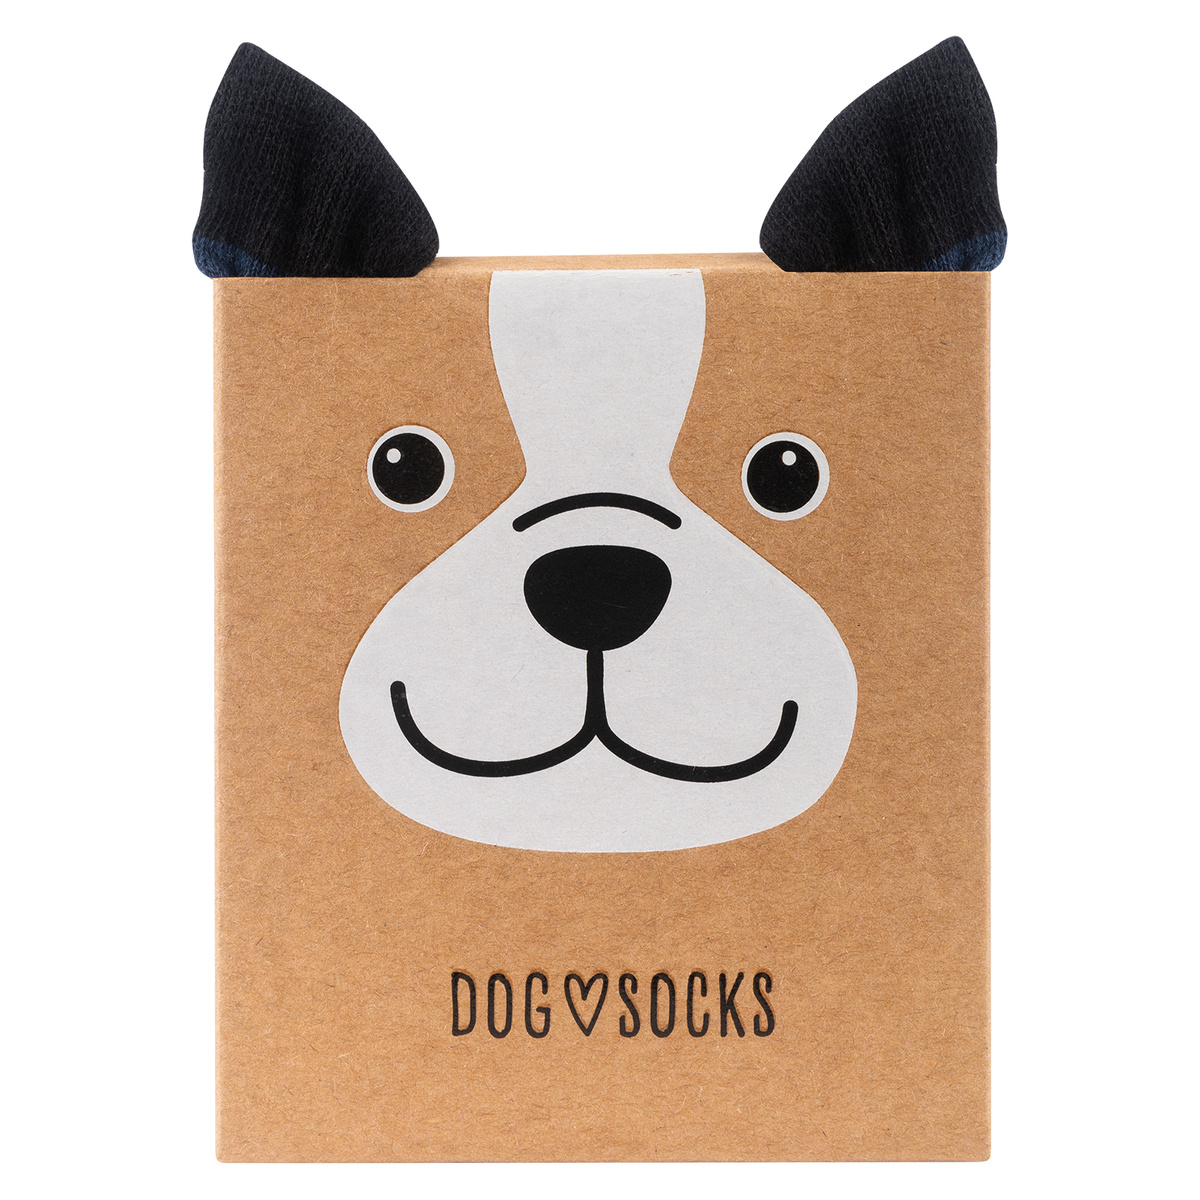 Los calcetines para perro funcionan?